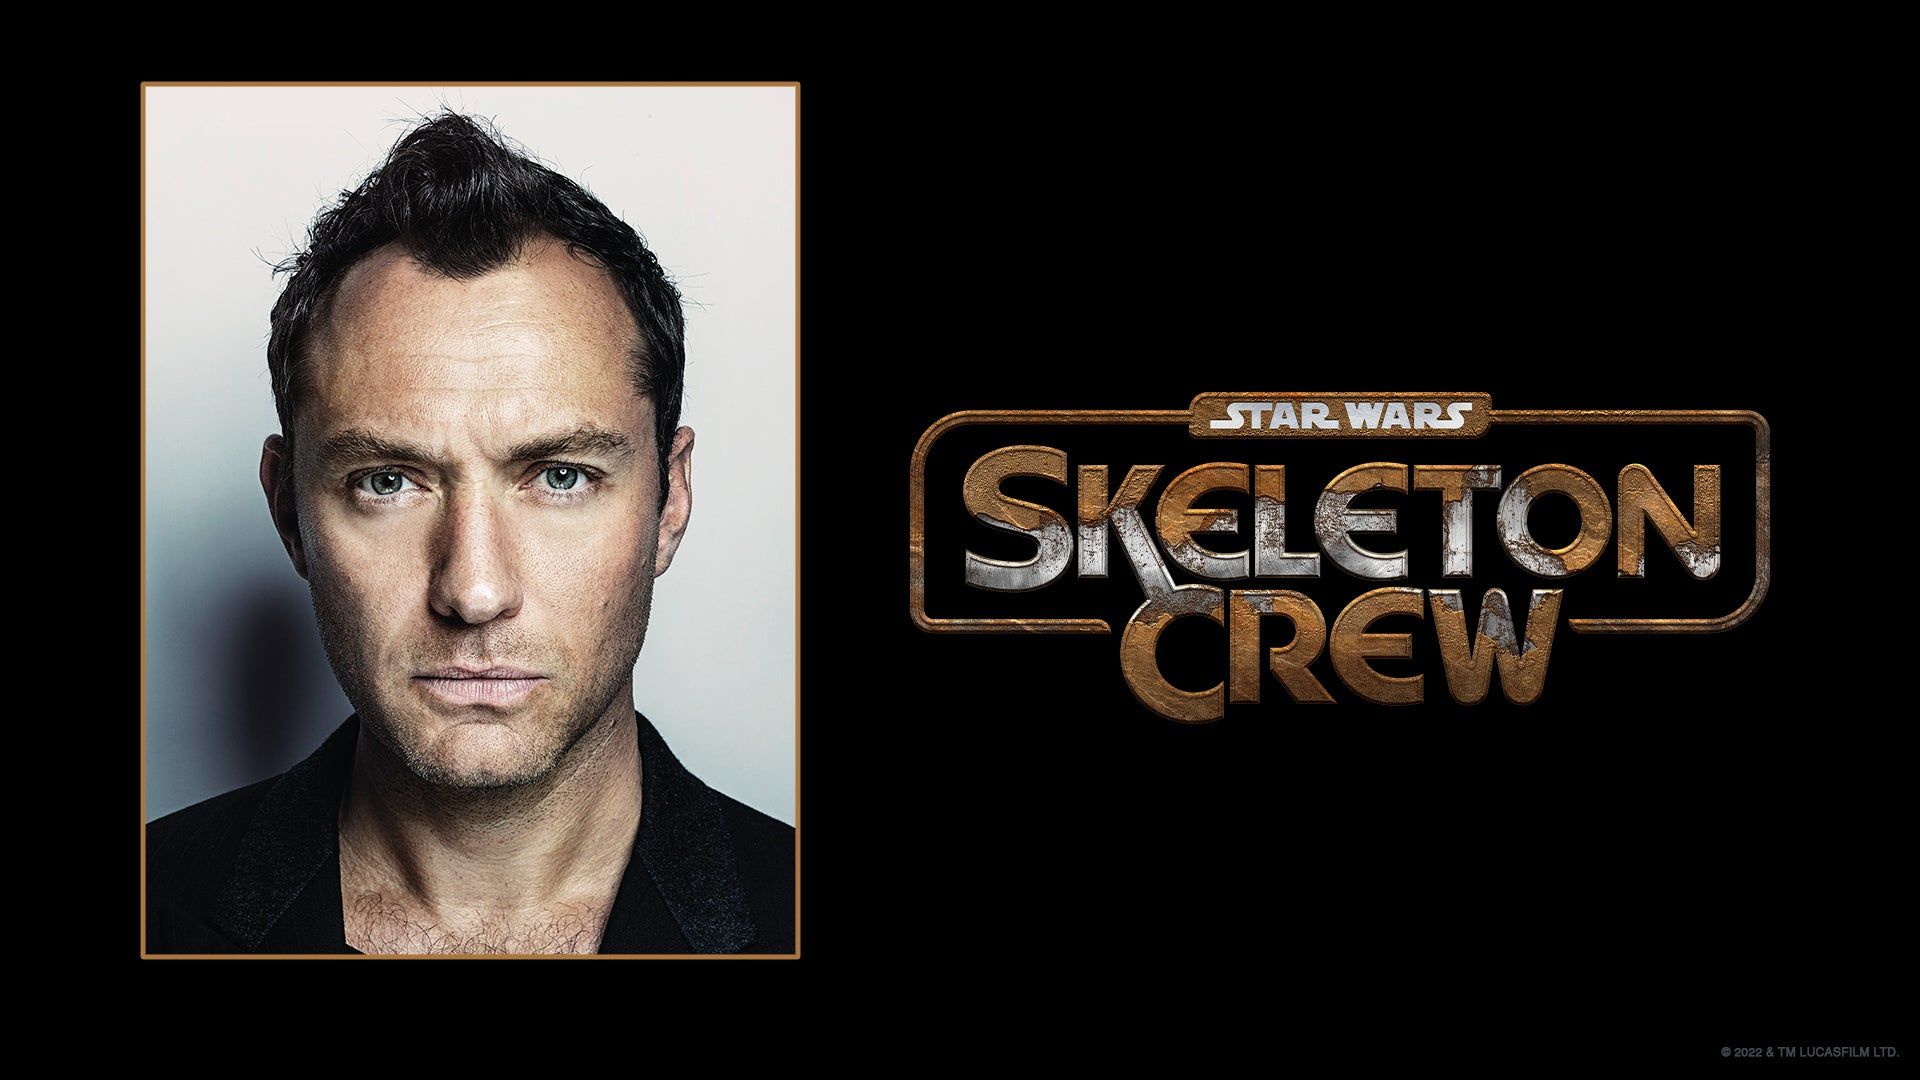 Star Wars: Skeleton Crew duyuruldu